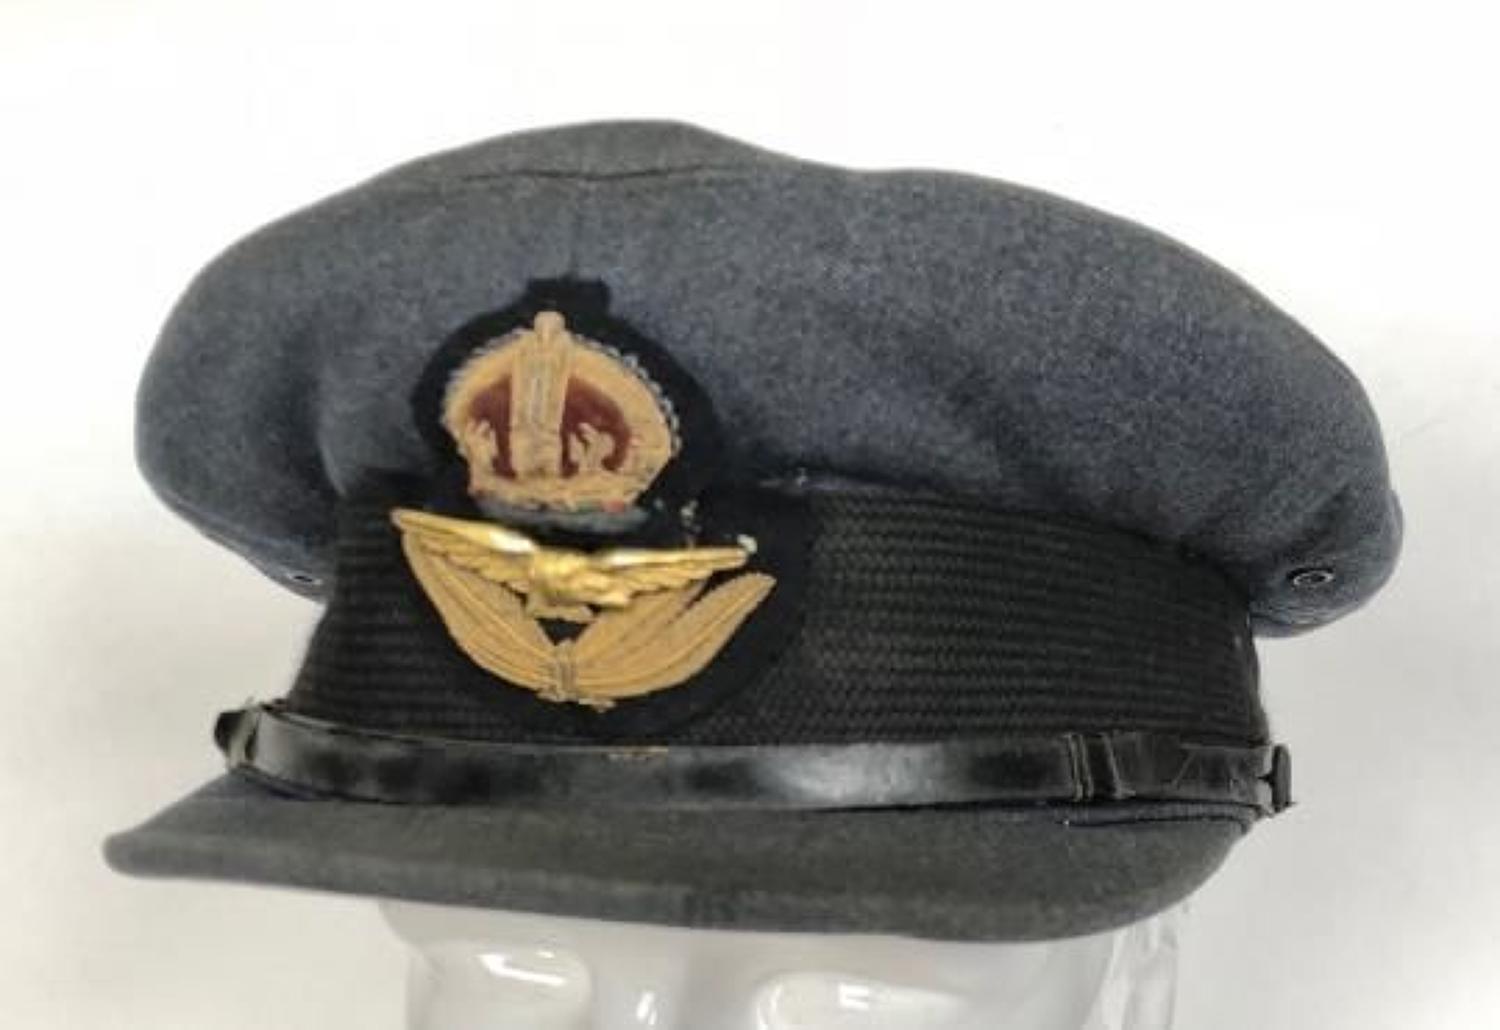 WW2 RAF Officer's Servicedress Cap.